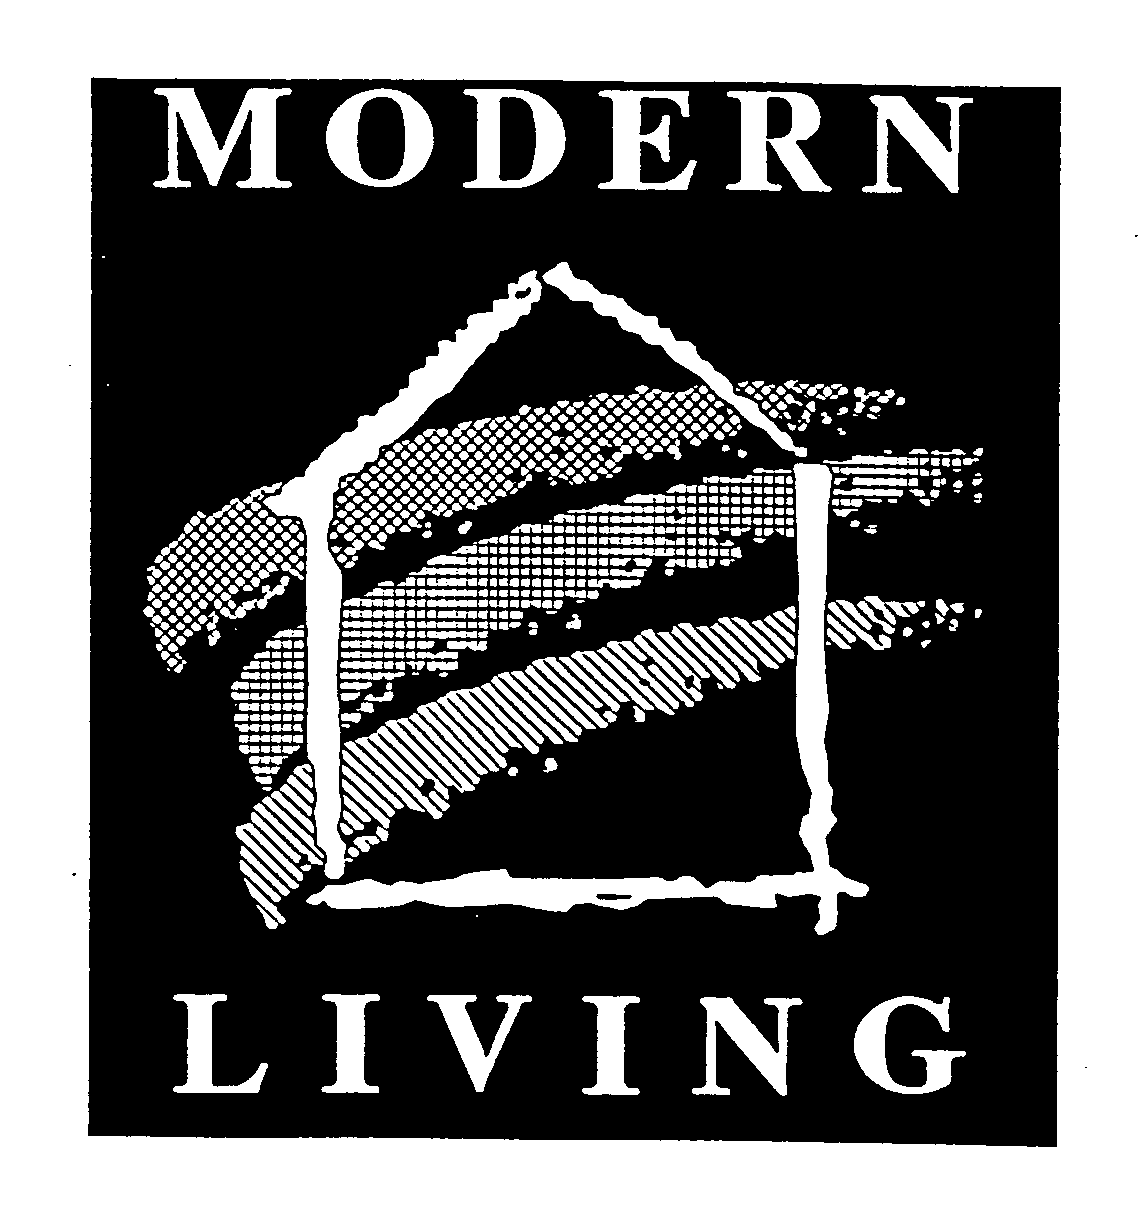 MODERN LIVING